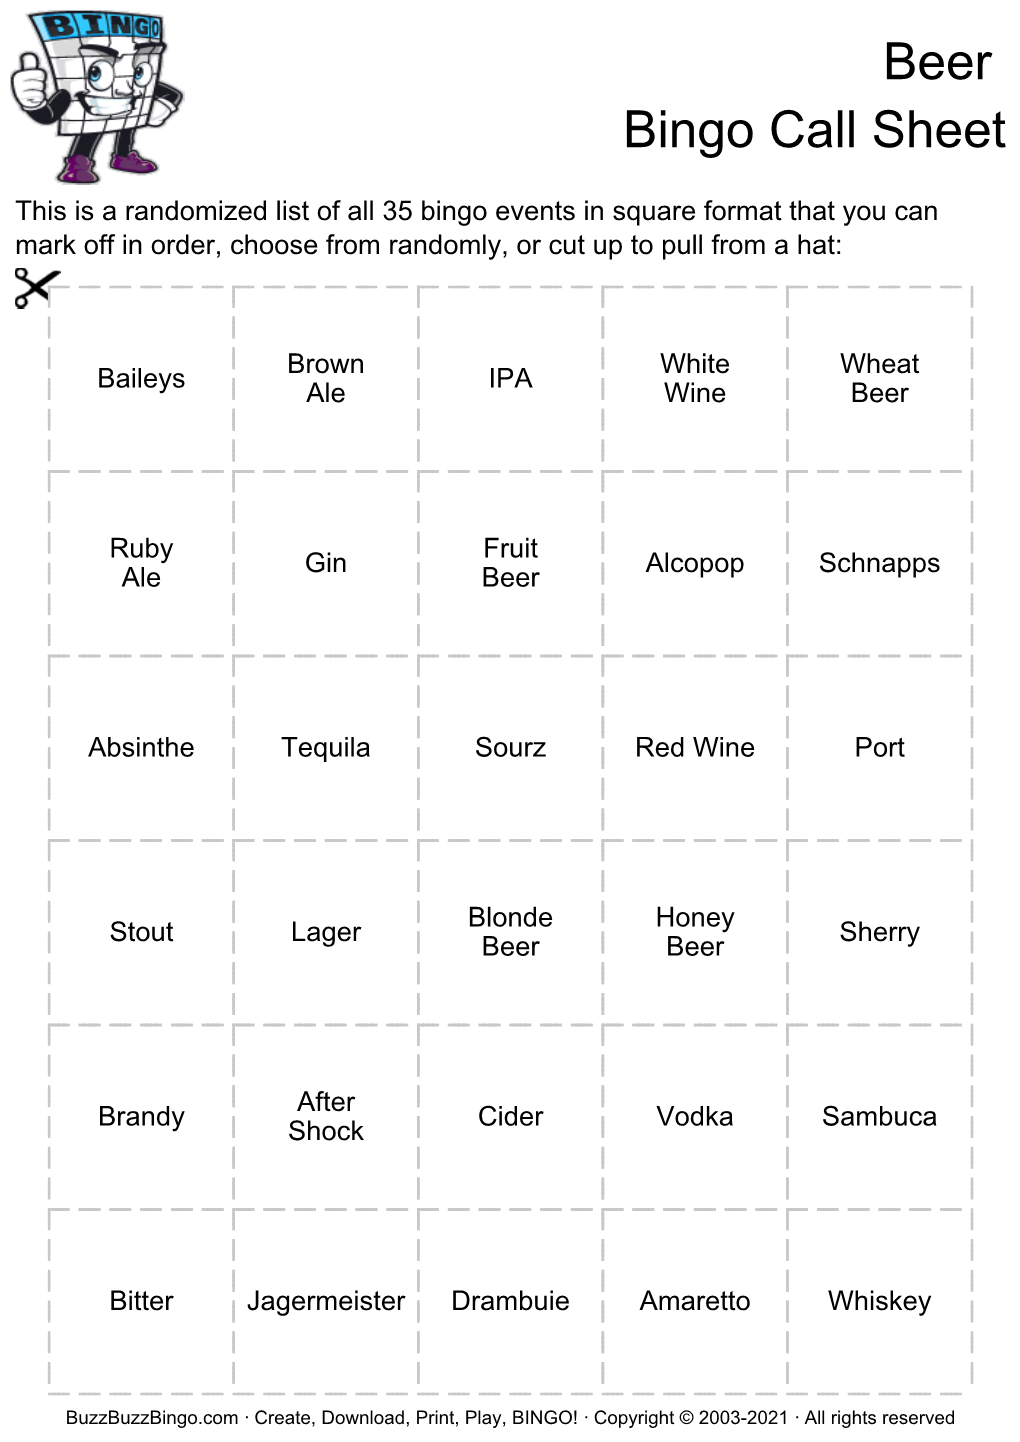 Beer Bingo Call Sheet